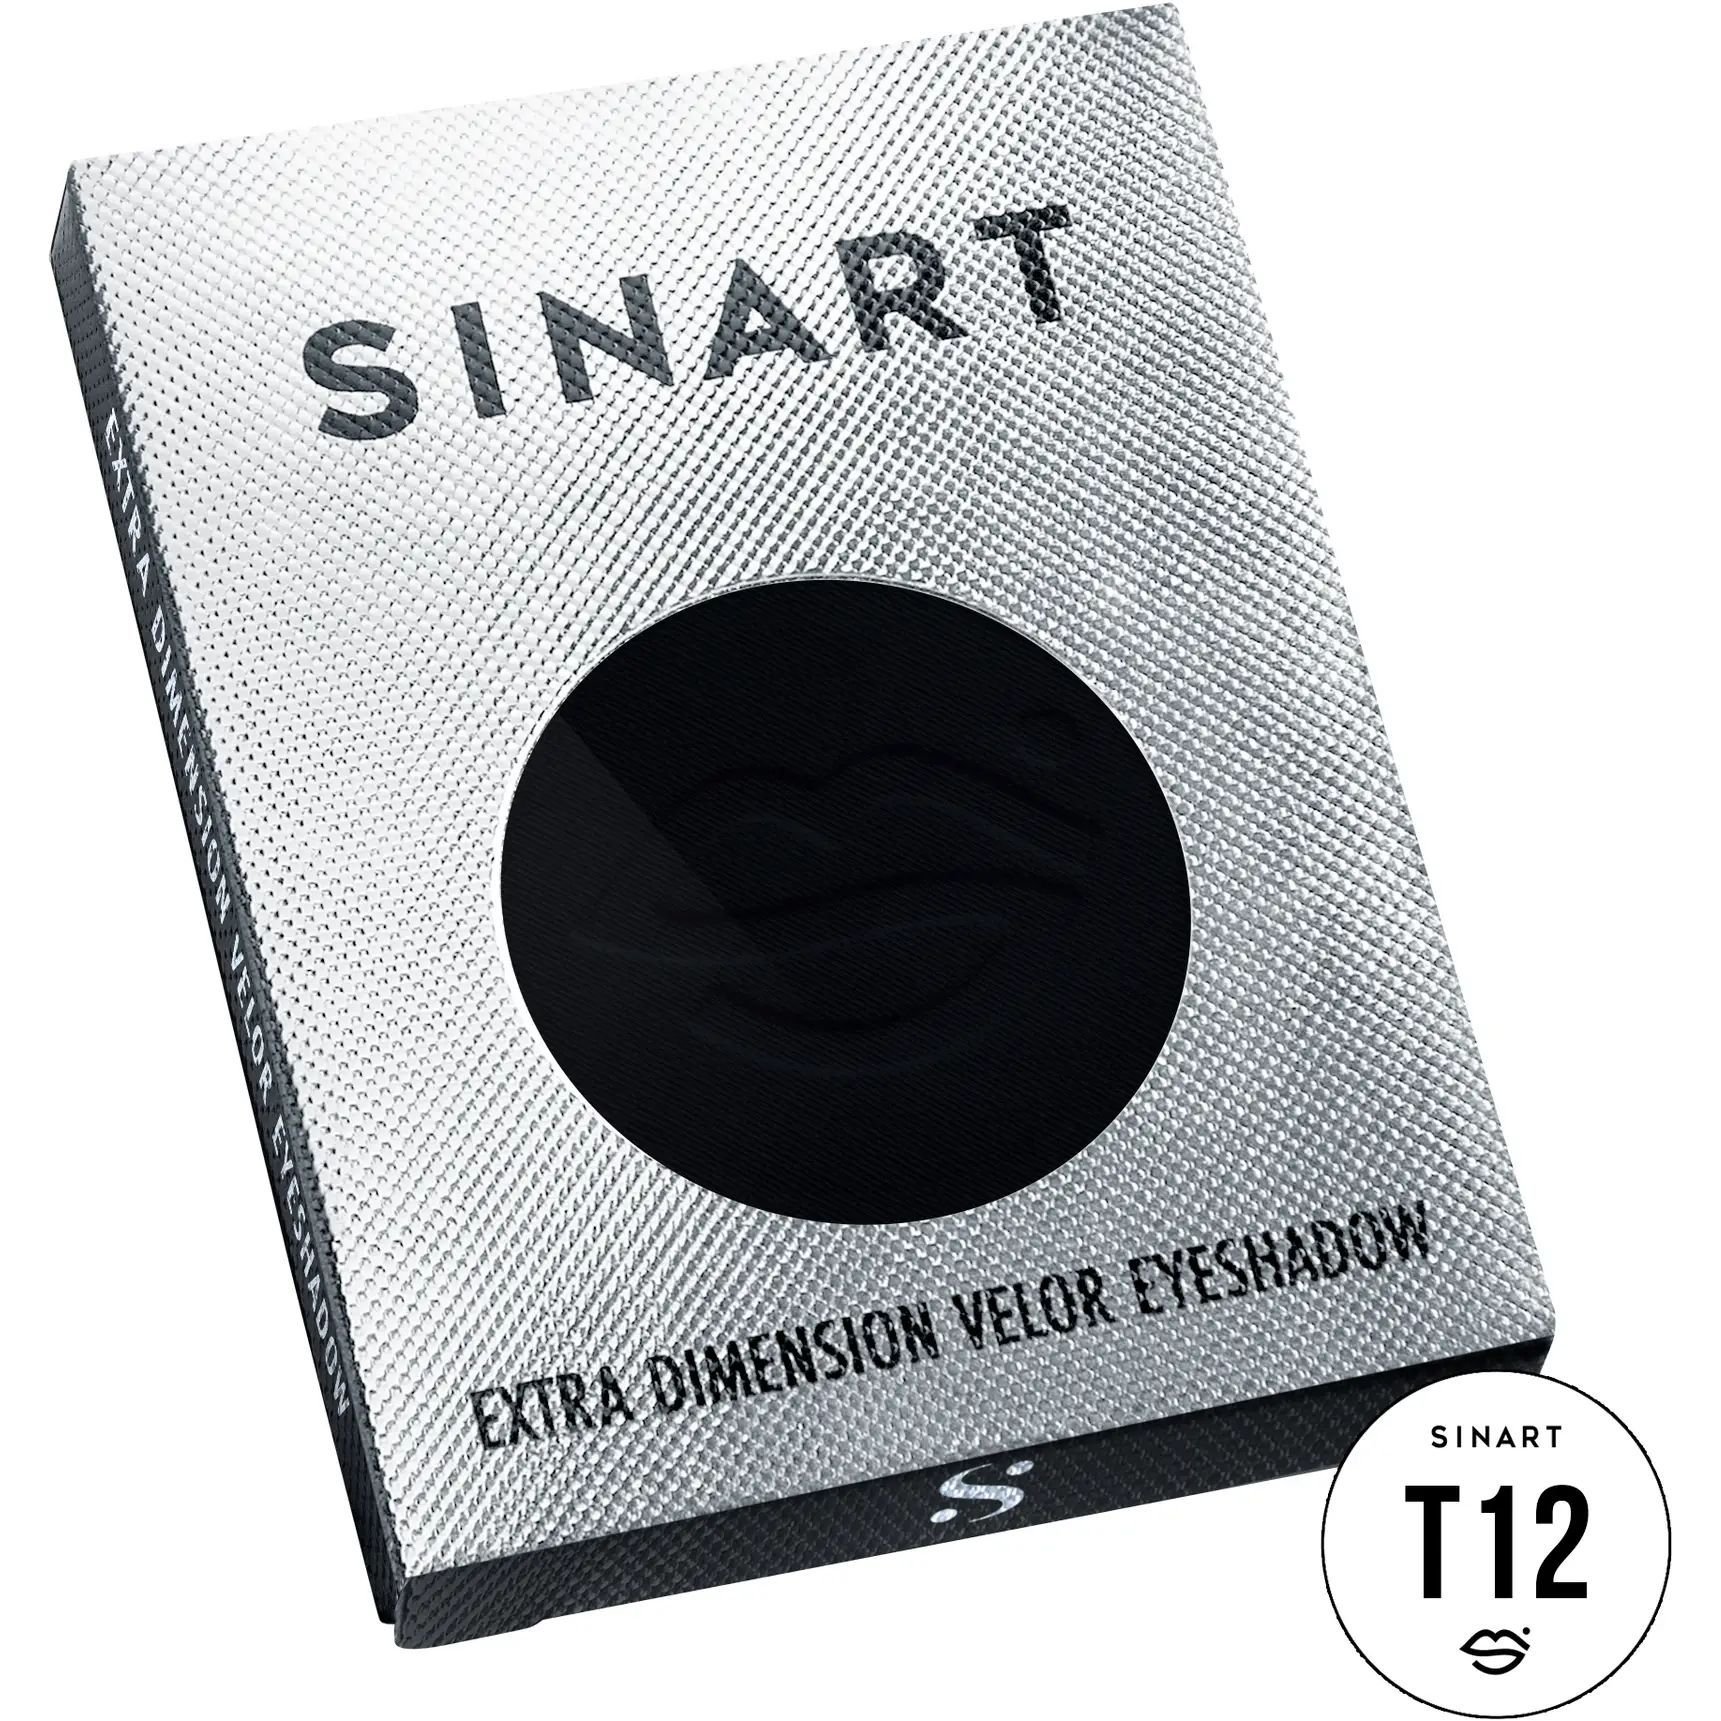 Прессованные тени для век Sinart T12 Extra Dimension Velor Eyeshadow - фото 3